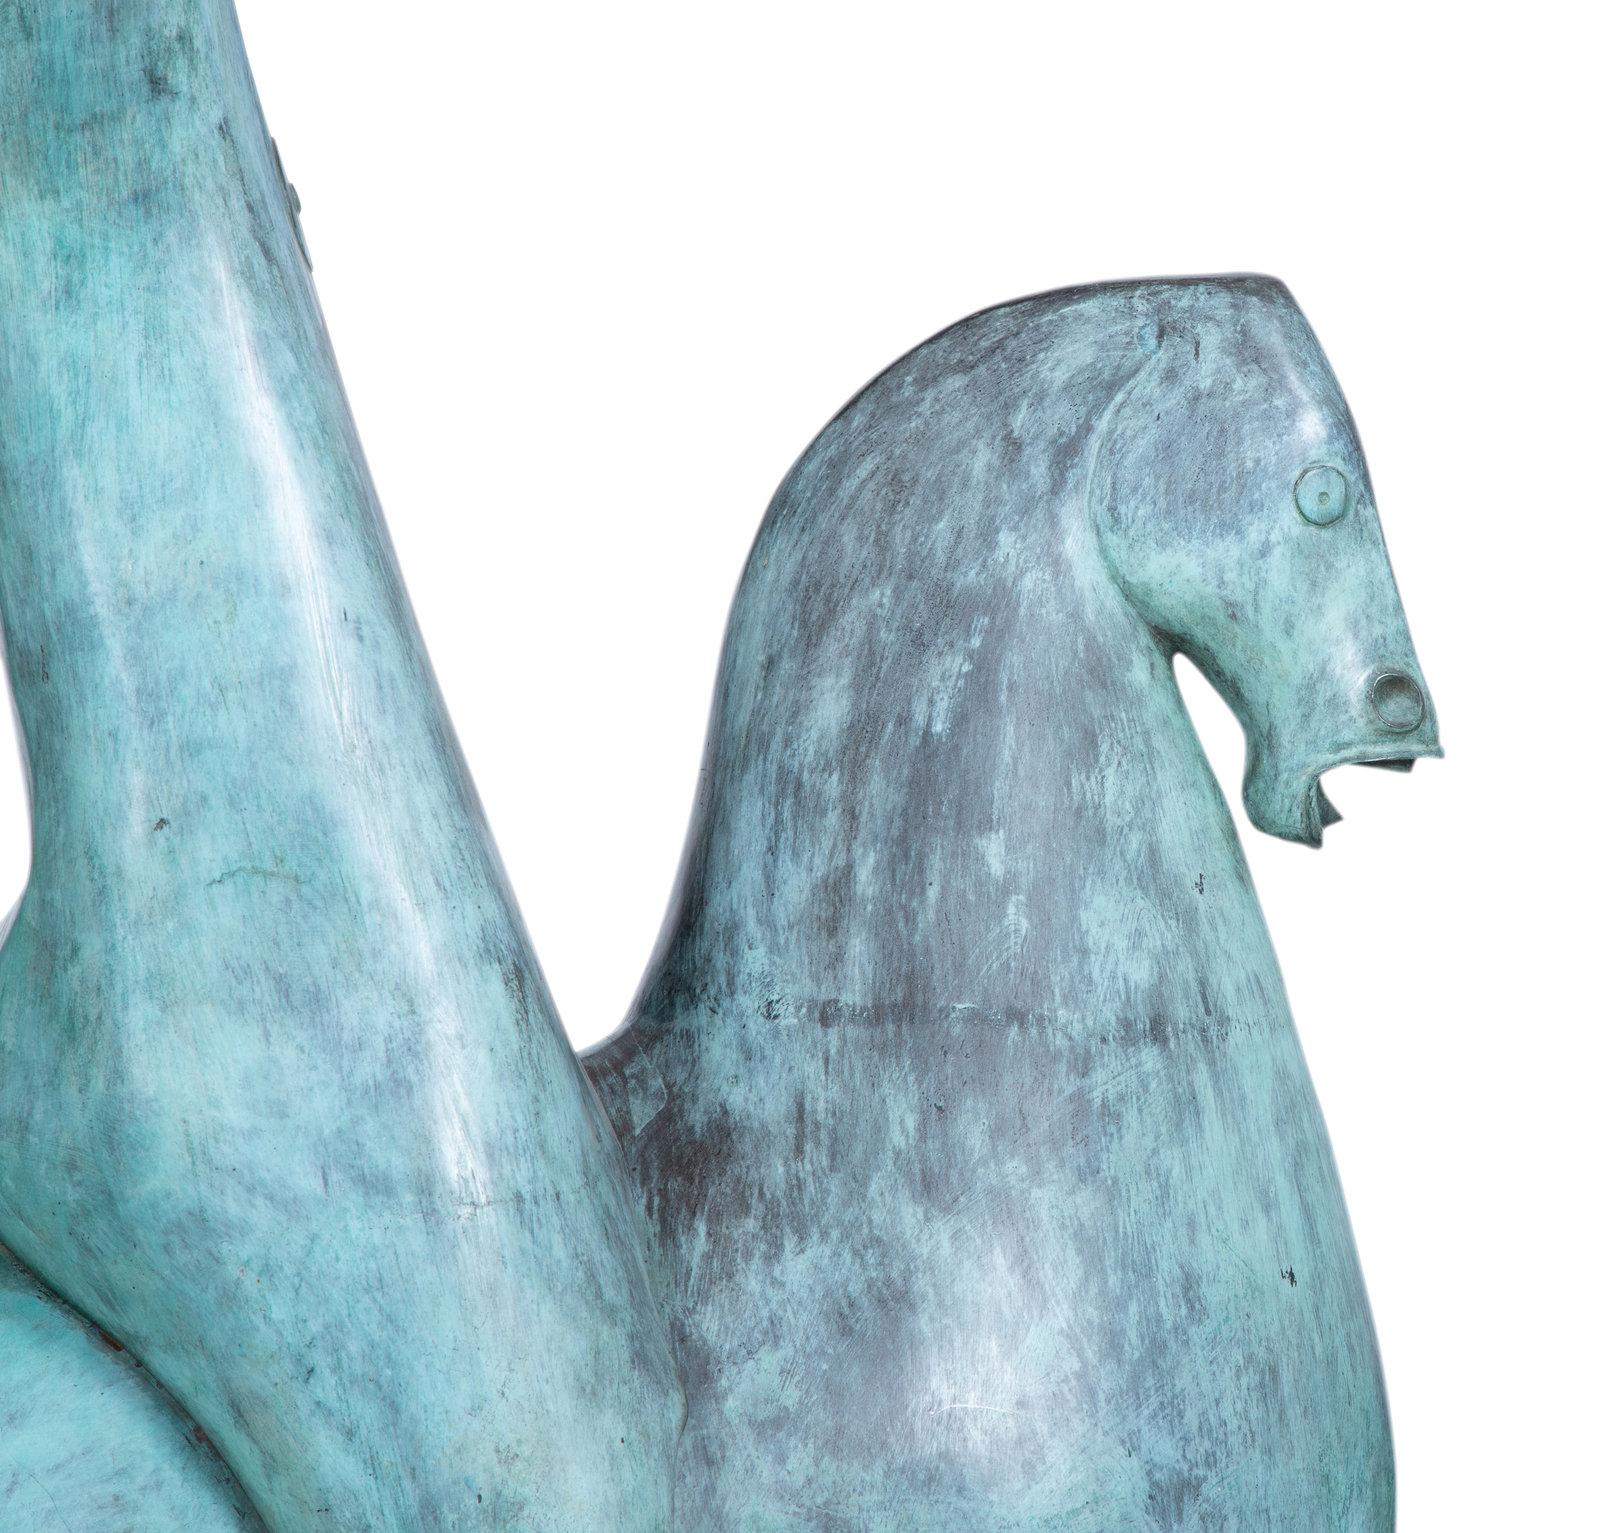 Horse With Two Riders, Pferd 
Groß im Freien  Bronze-Skulptur 1974 
Vom Künstler signiert, Auflage 2/6. Hellblaugrüne Patina.
Aus dem Boca Raton Museum of Art entnommen.
Dies ist eine atemberaubende sehr große Skulptur für drinnen oder draußen. Die